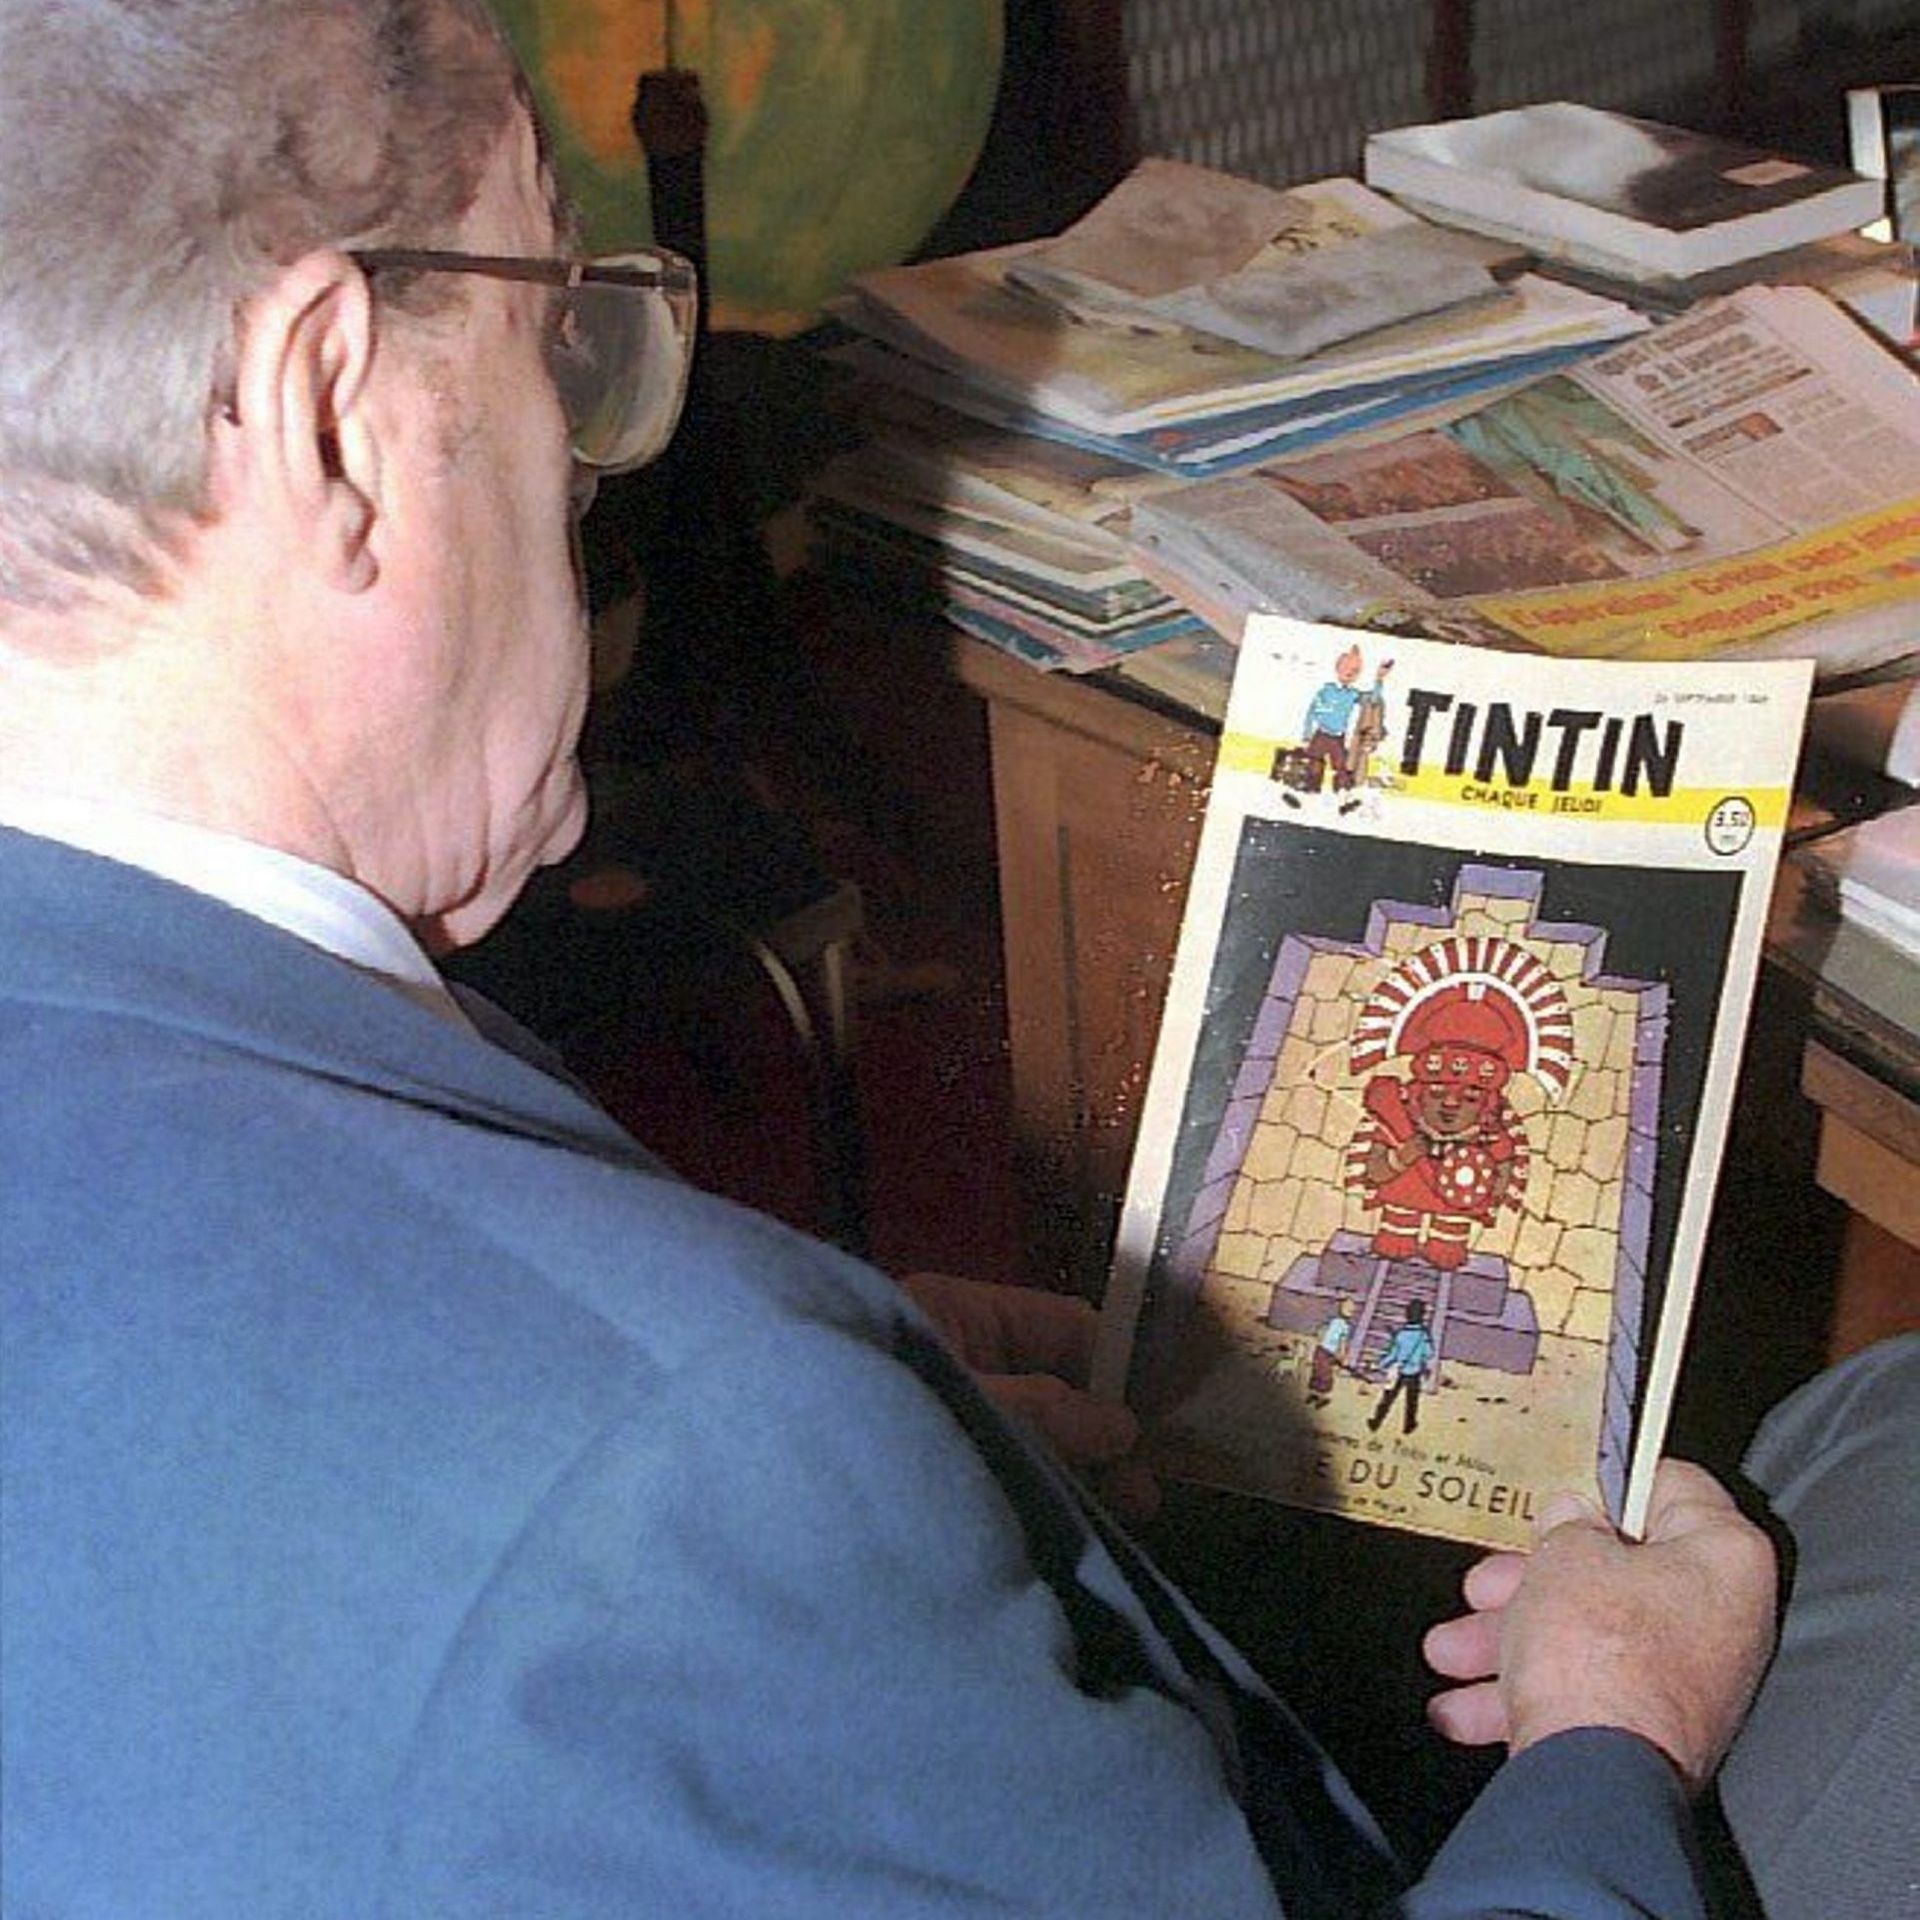 La photo du dossier montre l'éditeur belge Raymond Leblanc, fondateur avec Hergé du "Journal de Tintin", décédé le vendredi 21 mars 2008 à l'âge de 92 ans. La photo a été prise le 25 septembre 1996 à l'occasion des 50 ans du Lombard éditions.